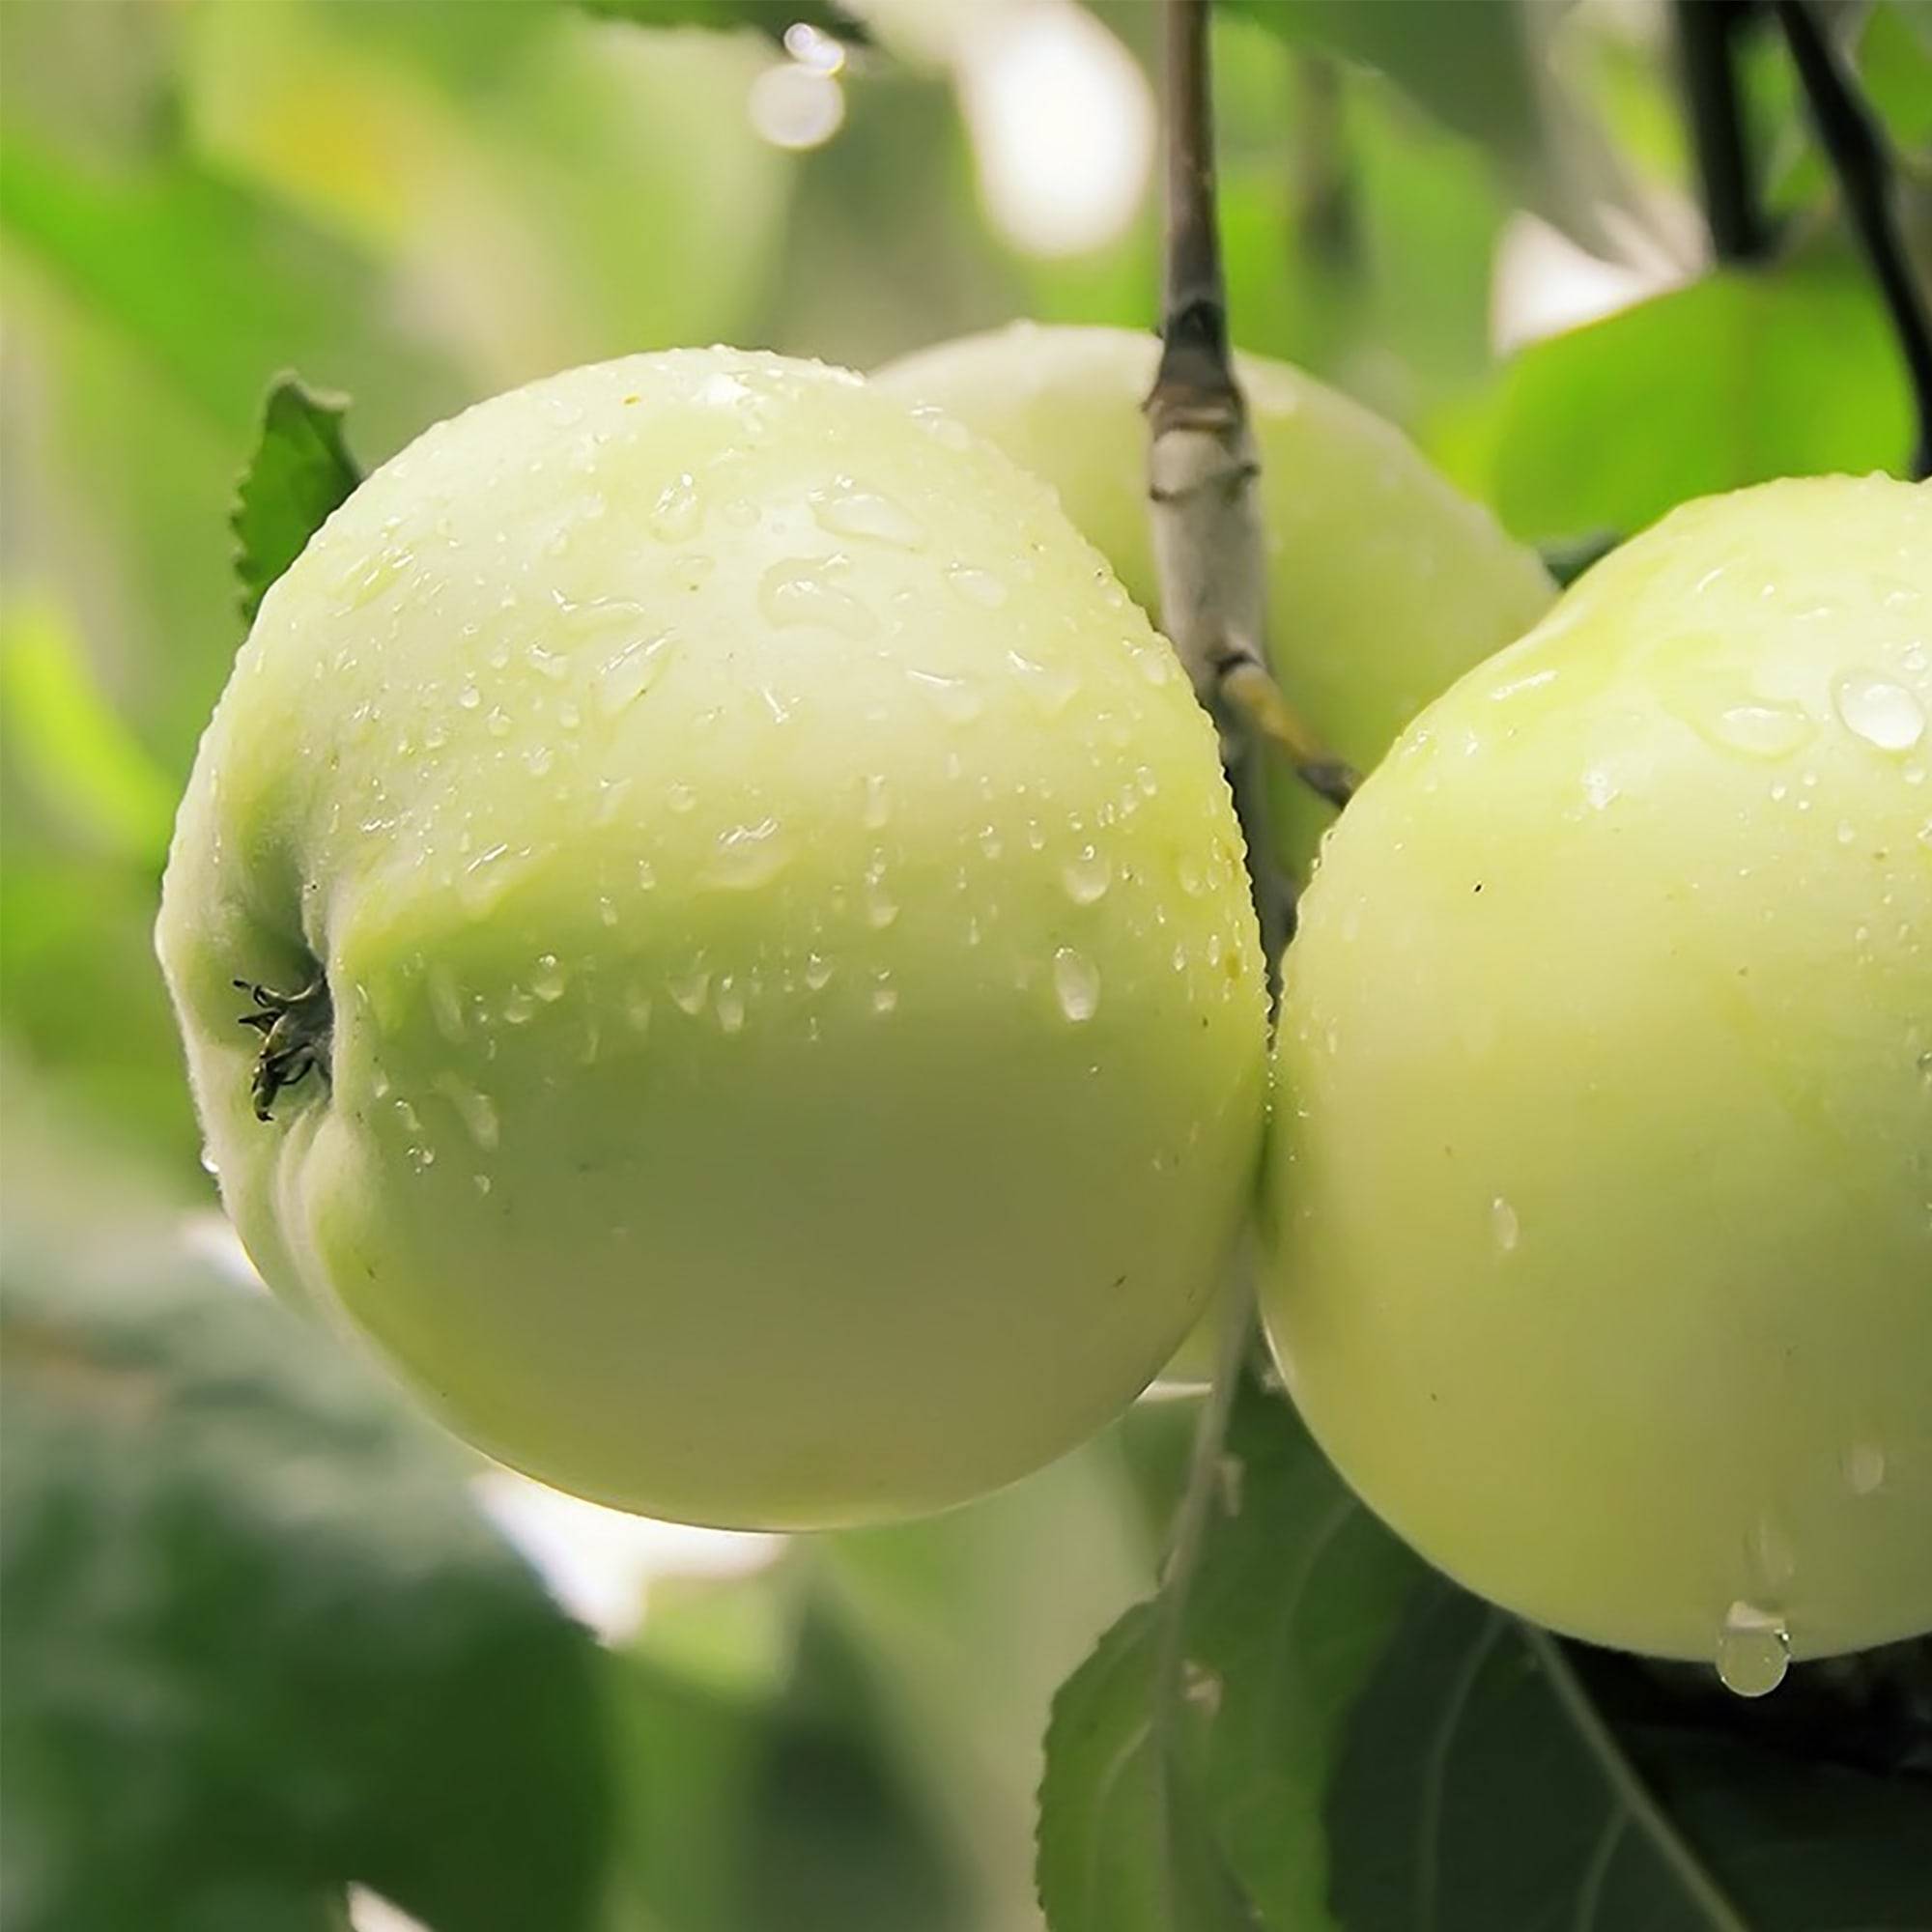 Сорт яблони антоновка обыкновенная – описание, морозостойкость, фото, отзывы